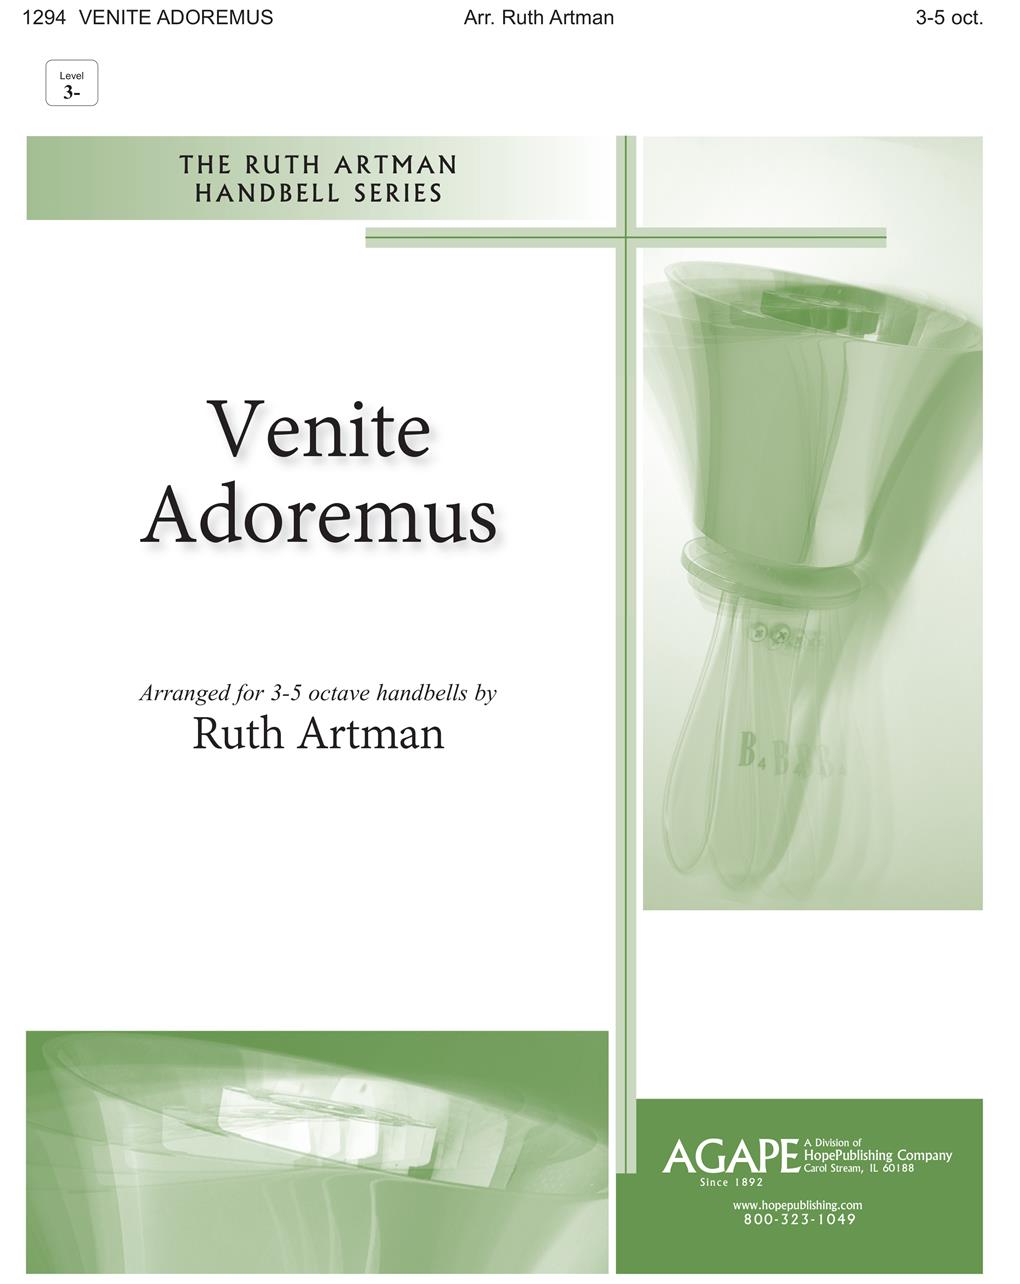 Venite Adoremus - 3-5 oct. Cover Image